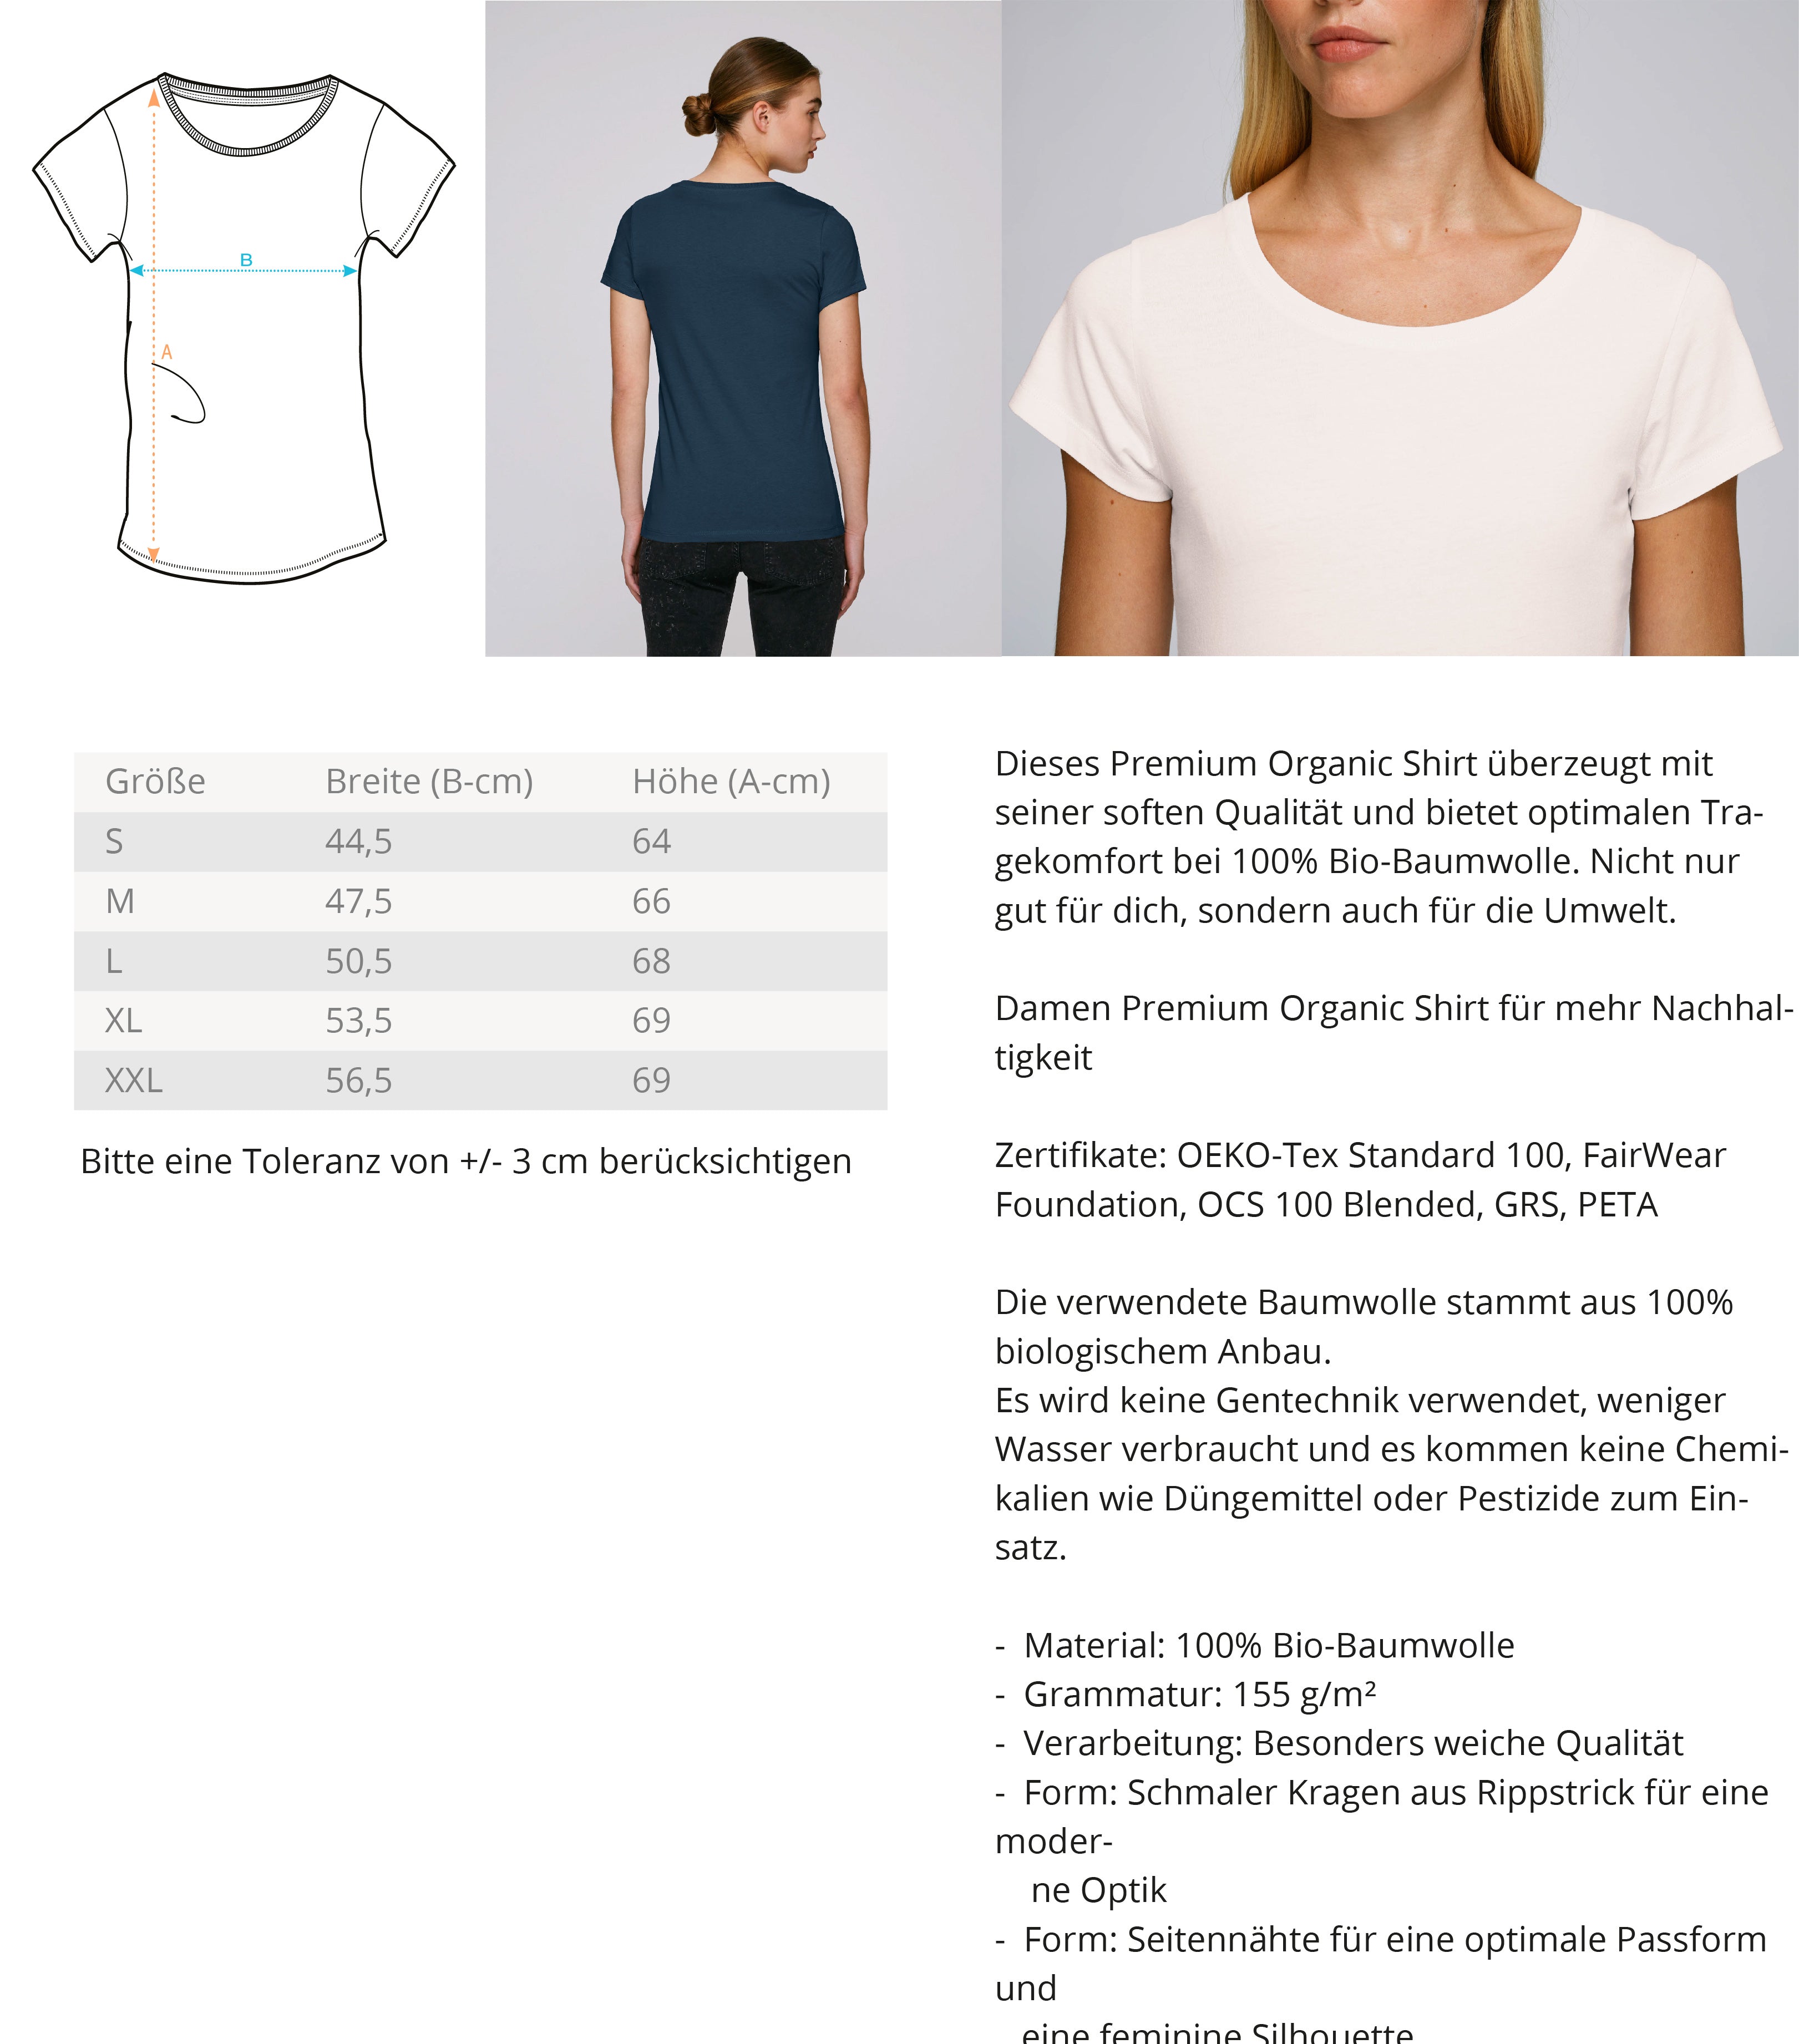 Team Herbivore  - Damen Premium Organic Shirt